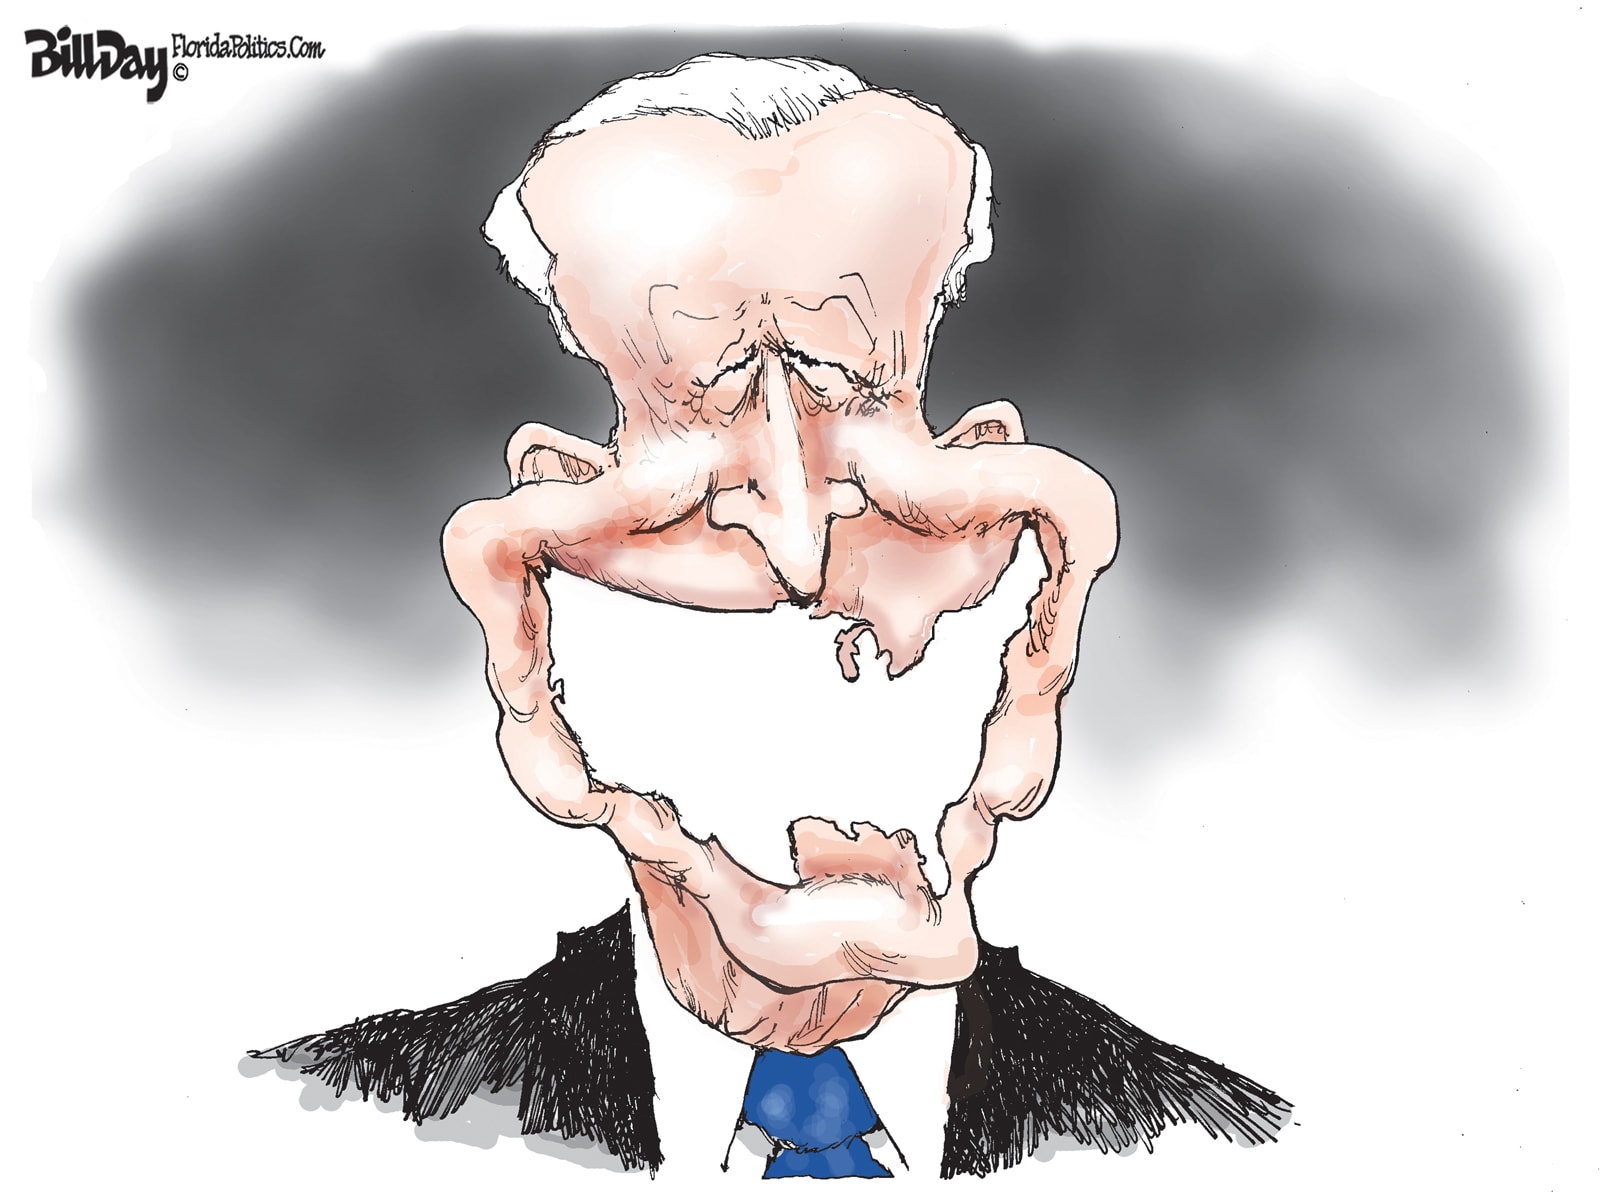 Joe Biden - Bill Day illustration